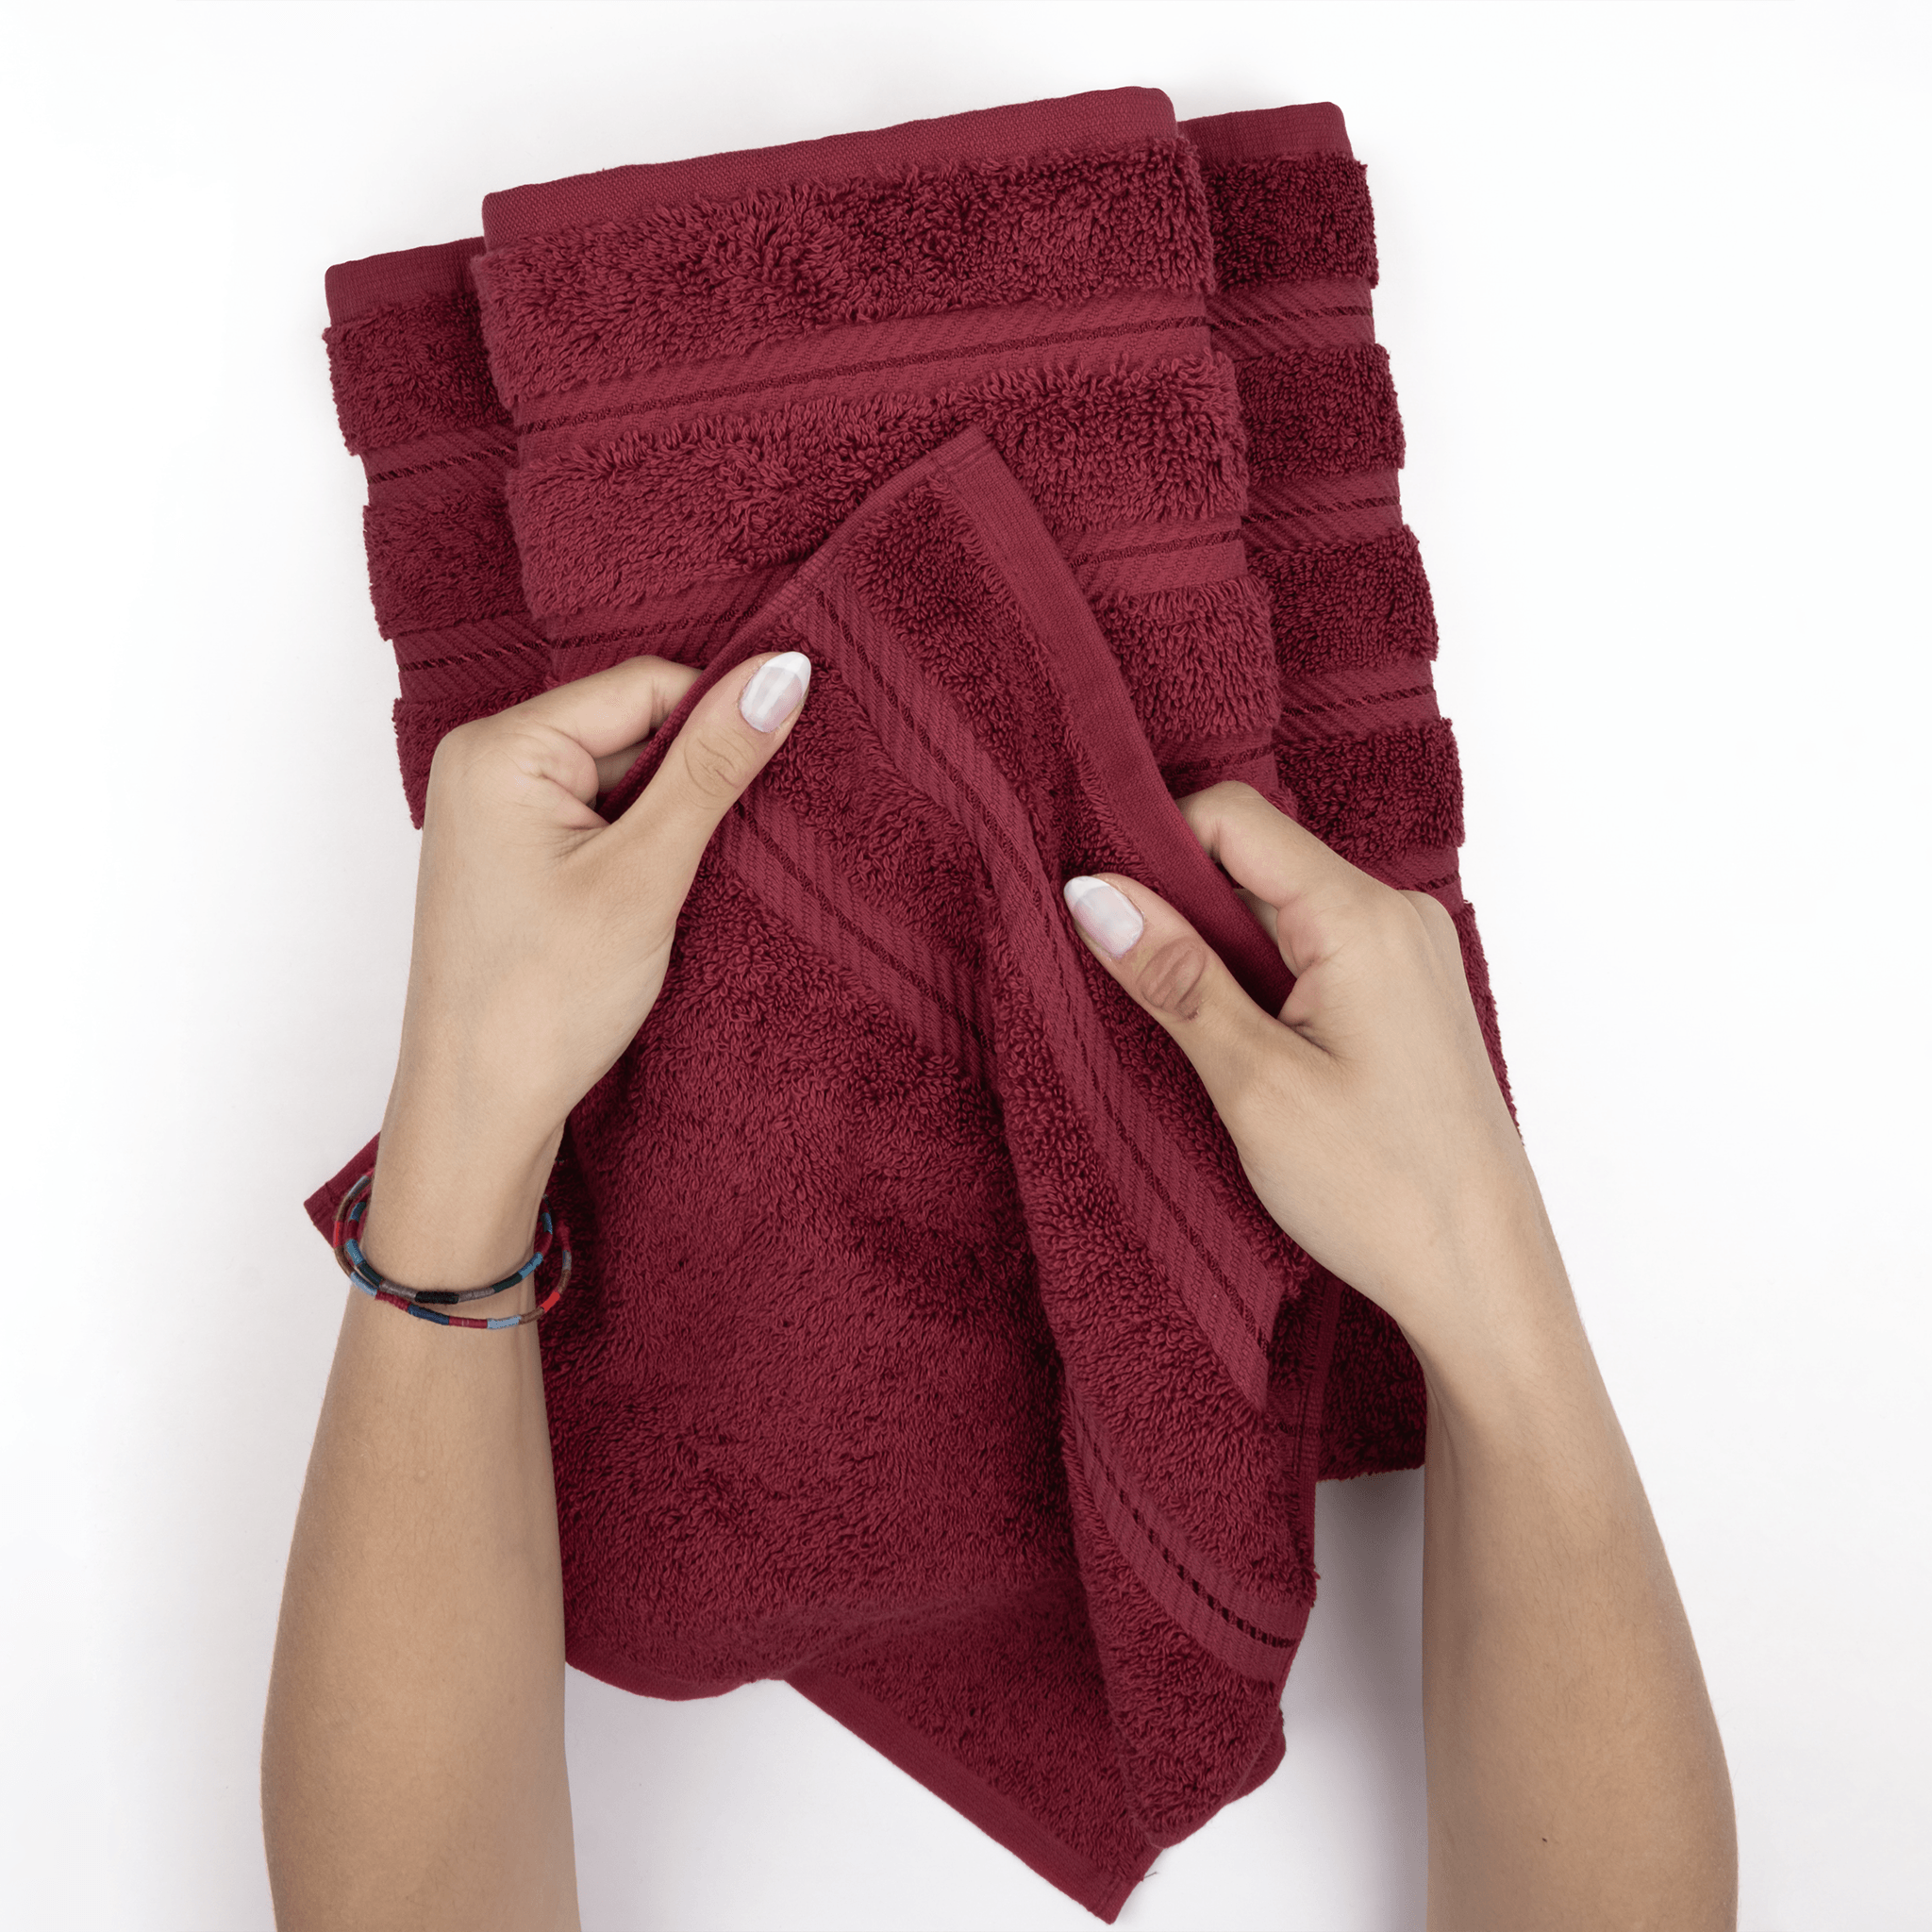 American Soft Linen - 3 Piece Turkish Cotton Towel Set - Bordeaux-Red - 5